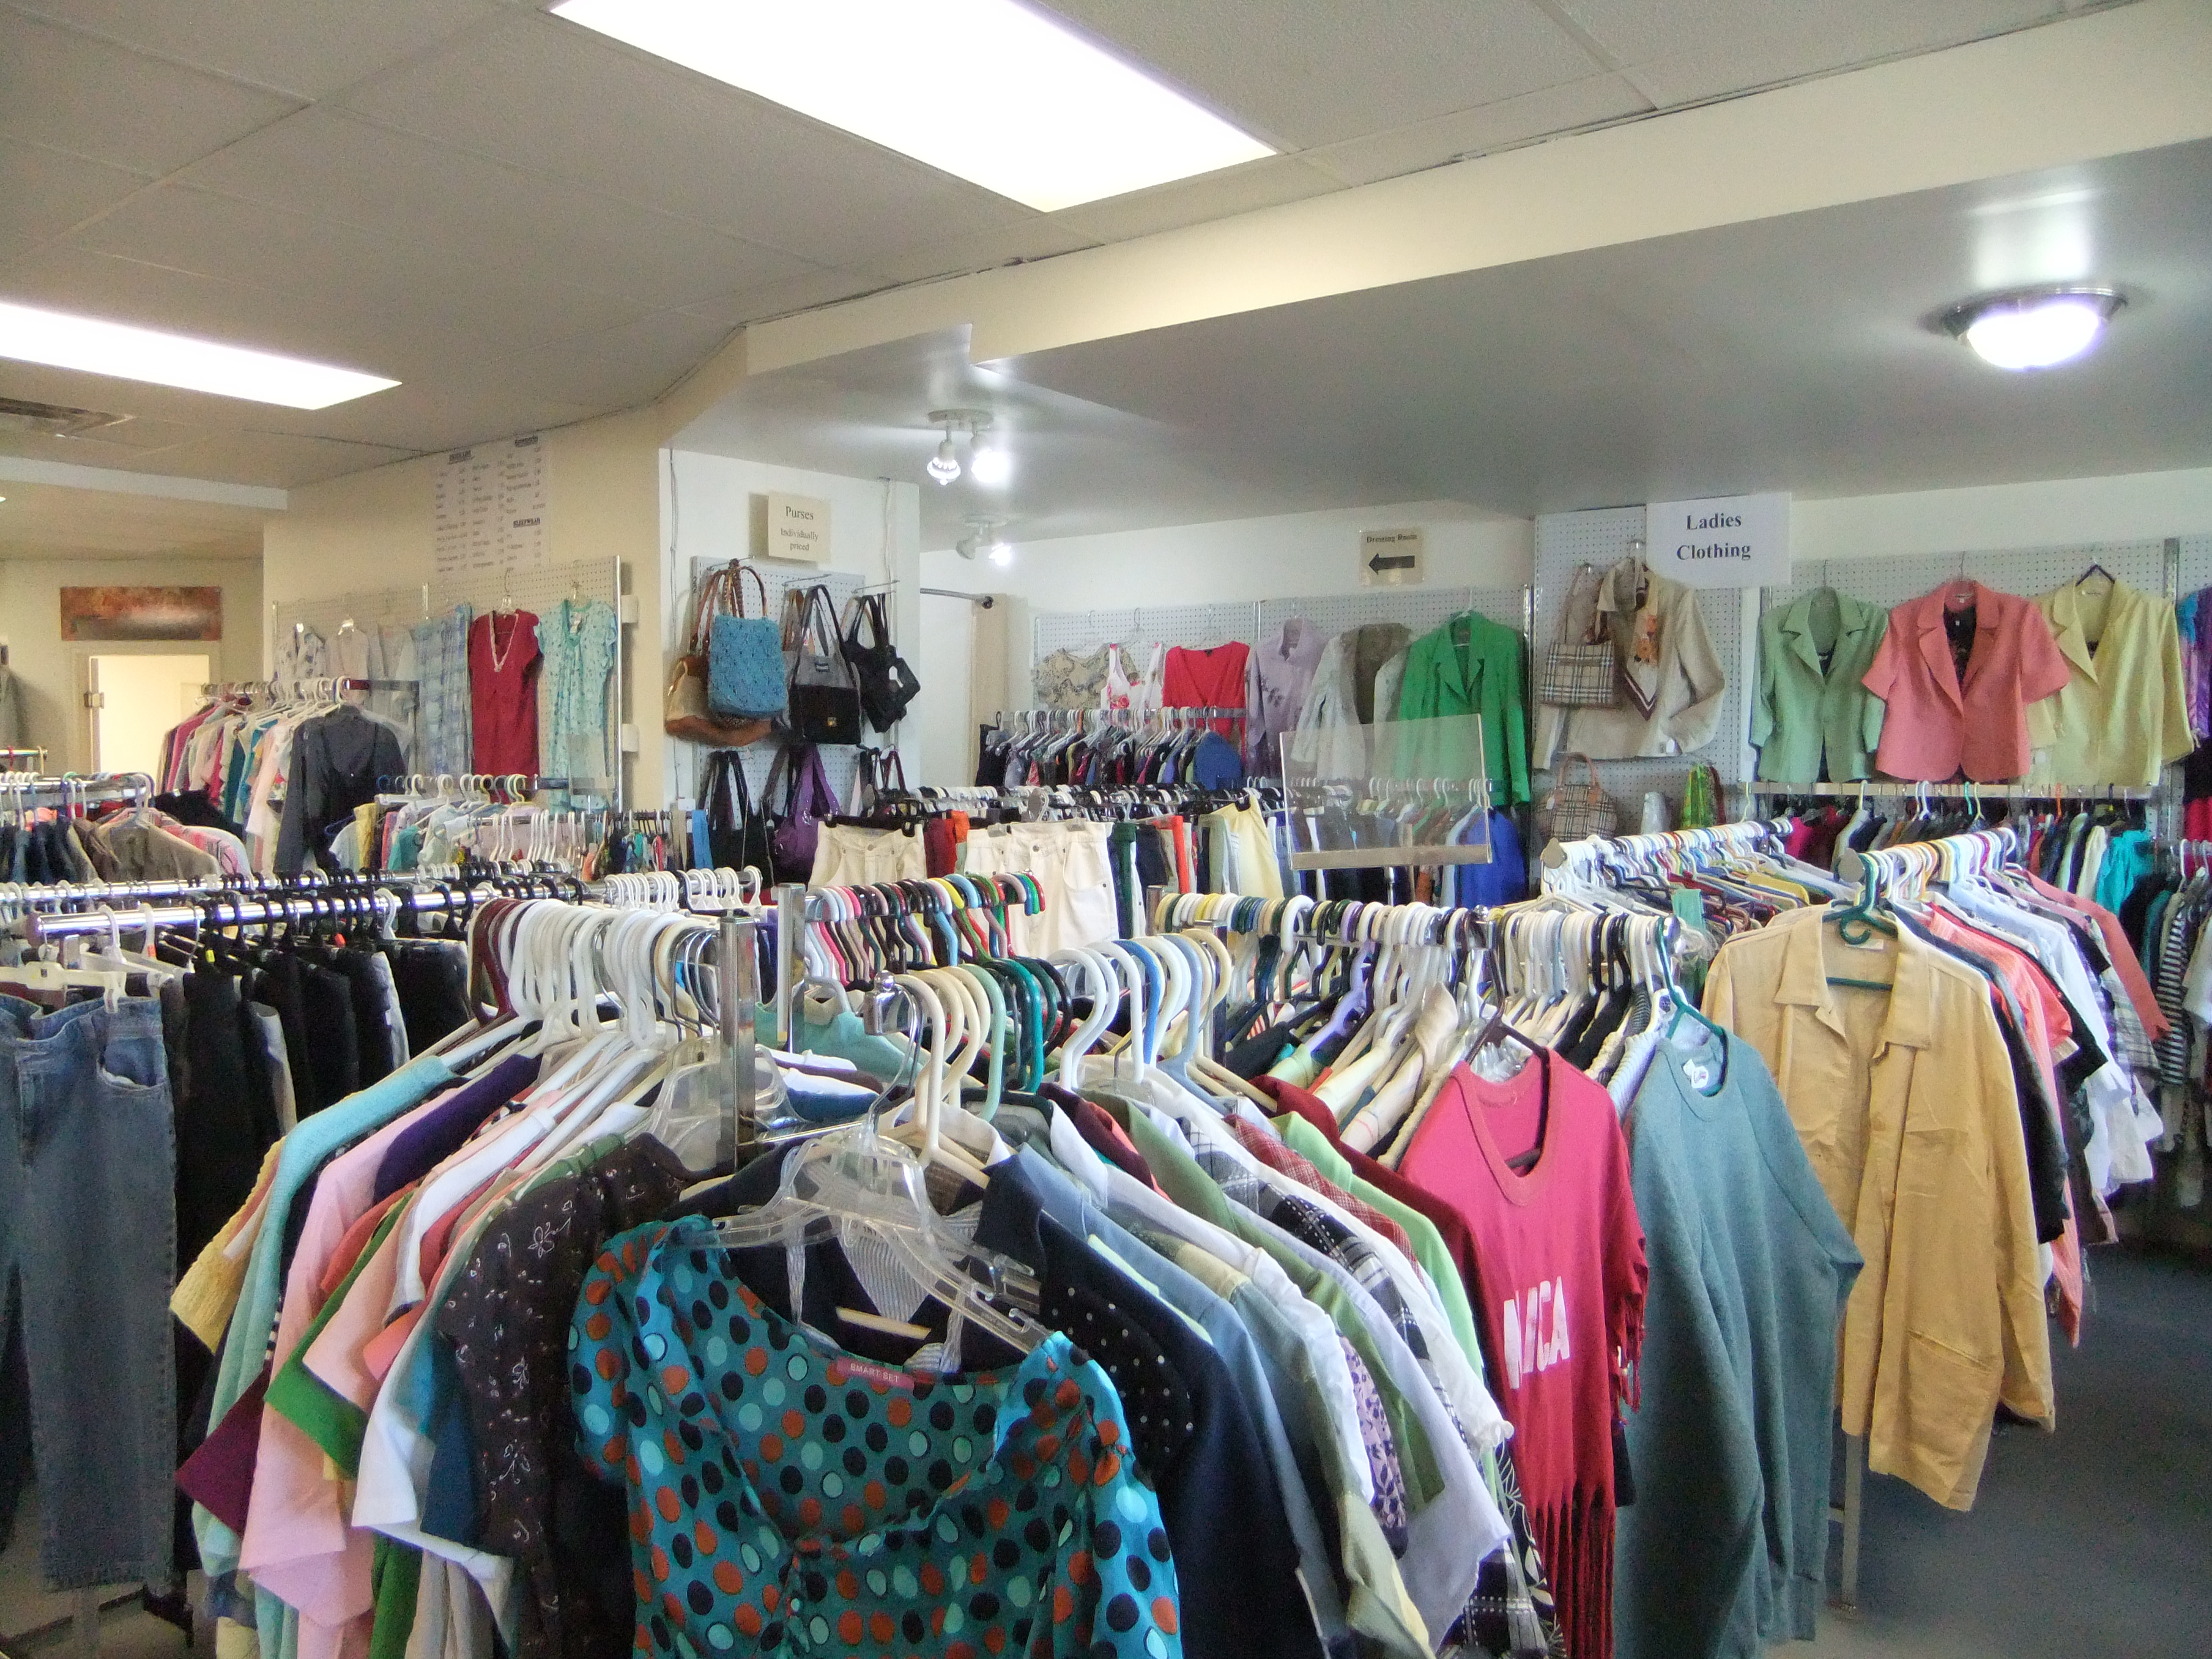 clothing racks in shop